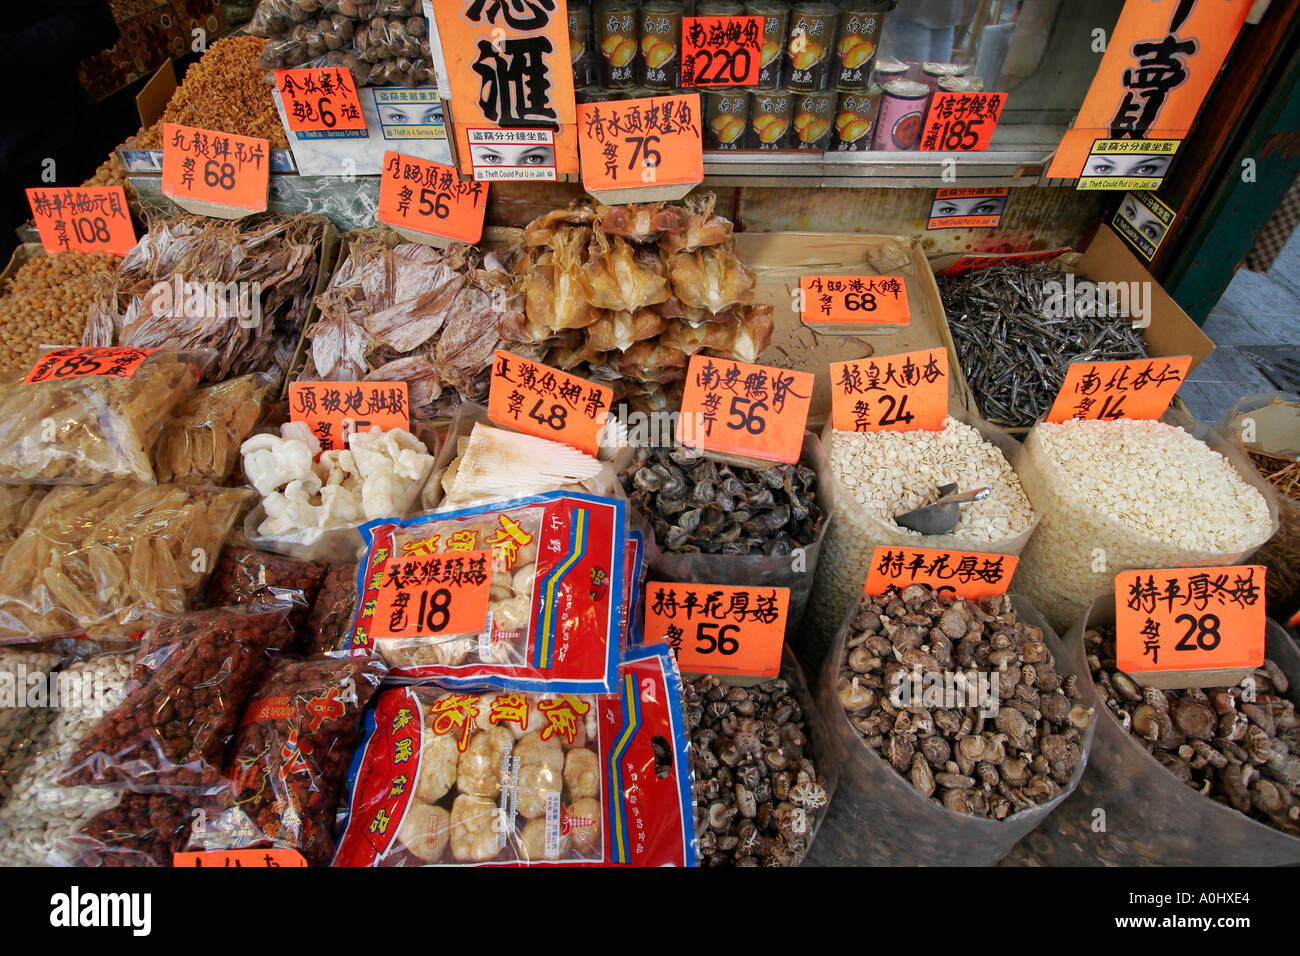 China Hong Kong Wanchai Dried Food seafood mushrooms Stock Photo